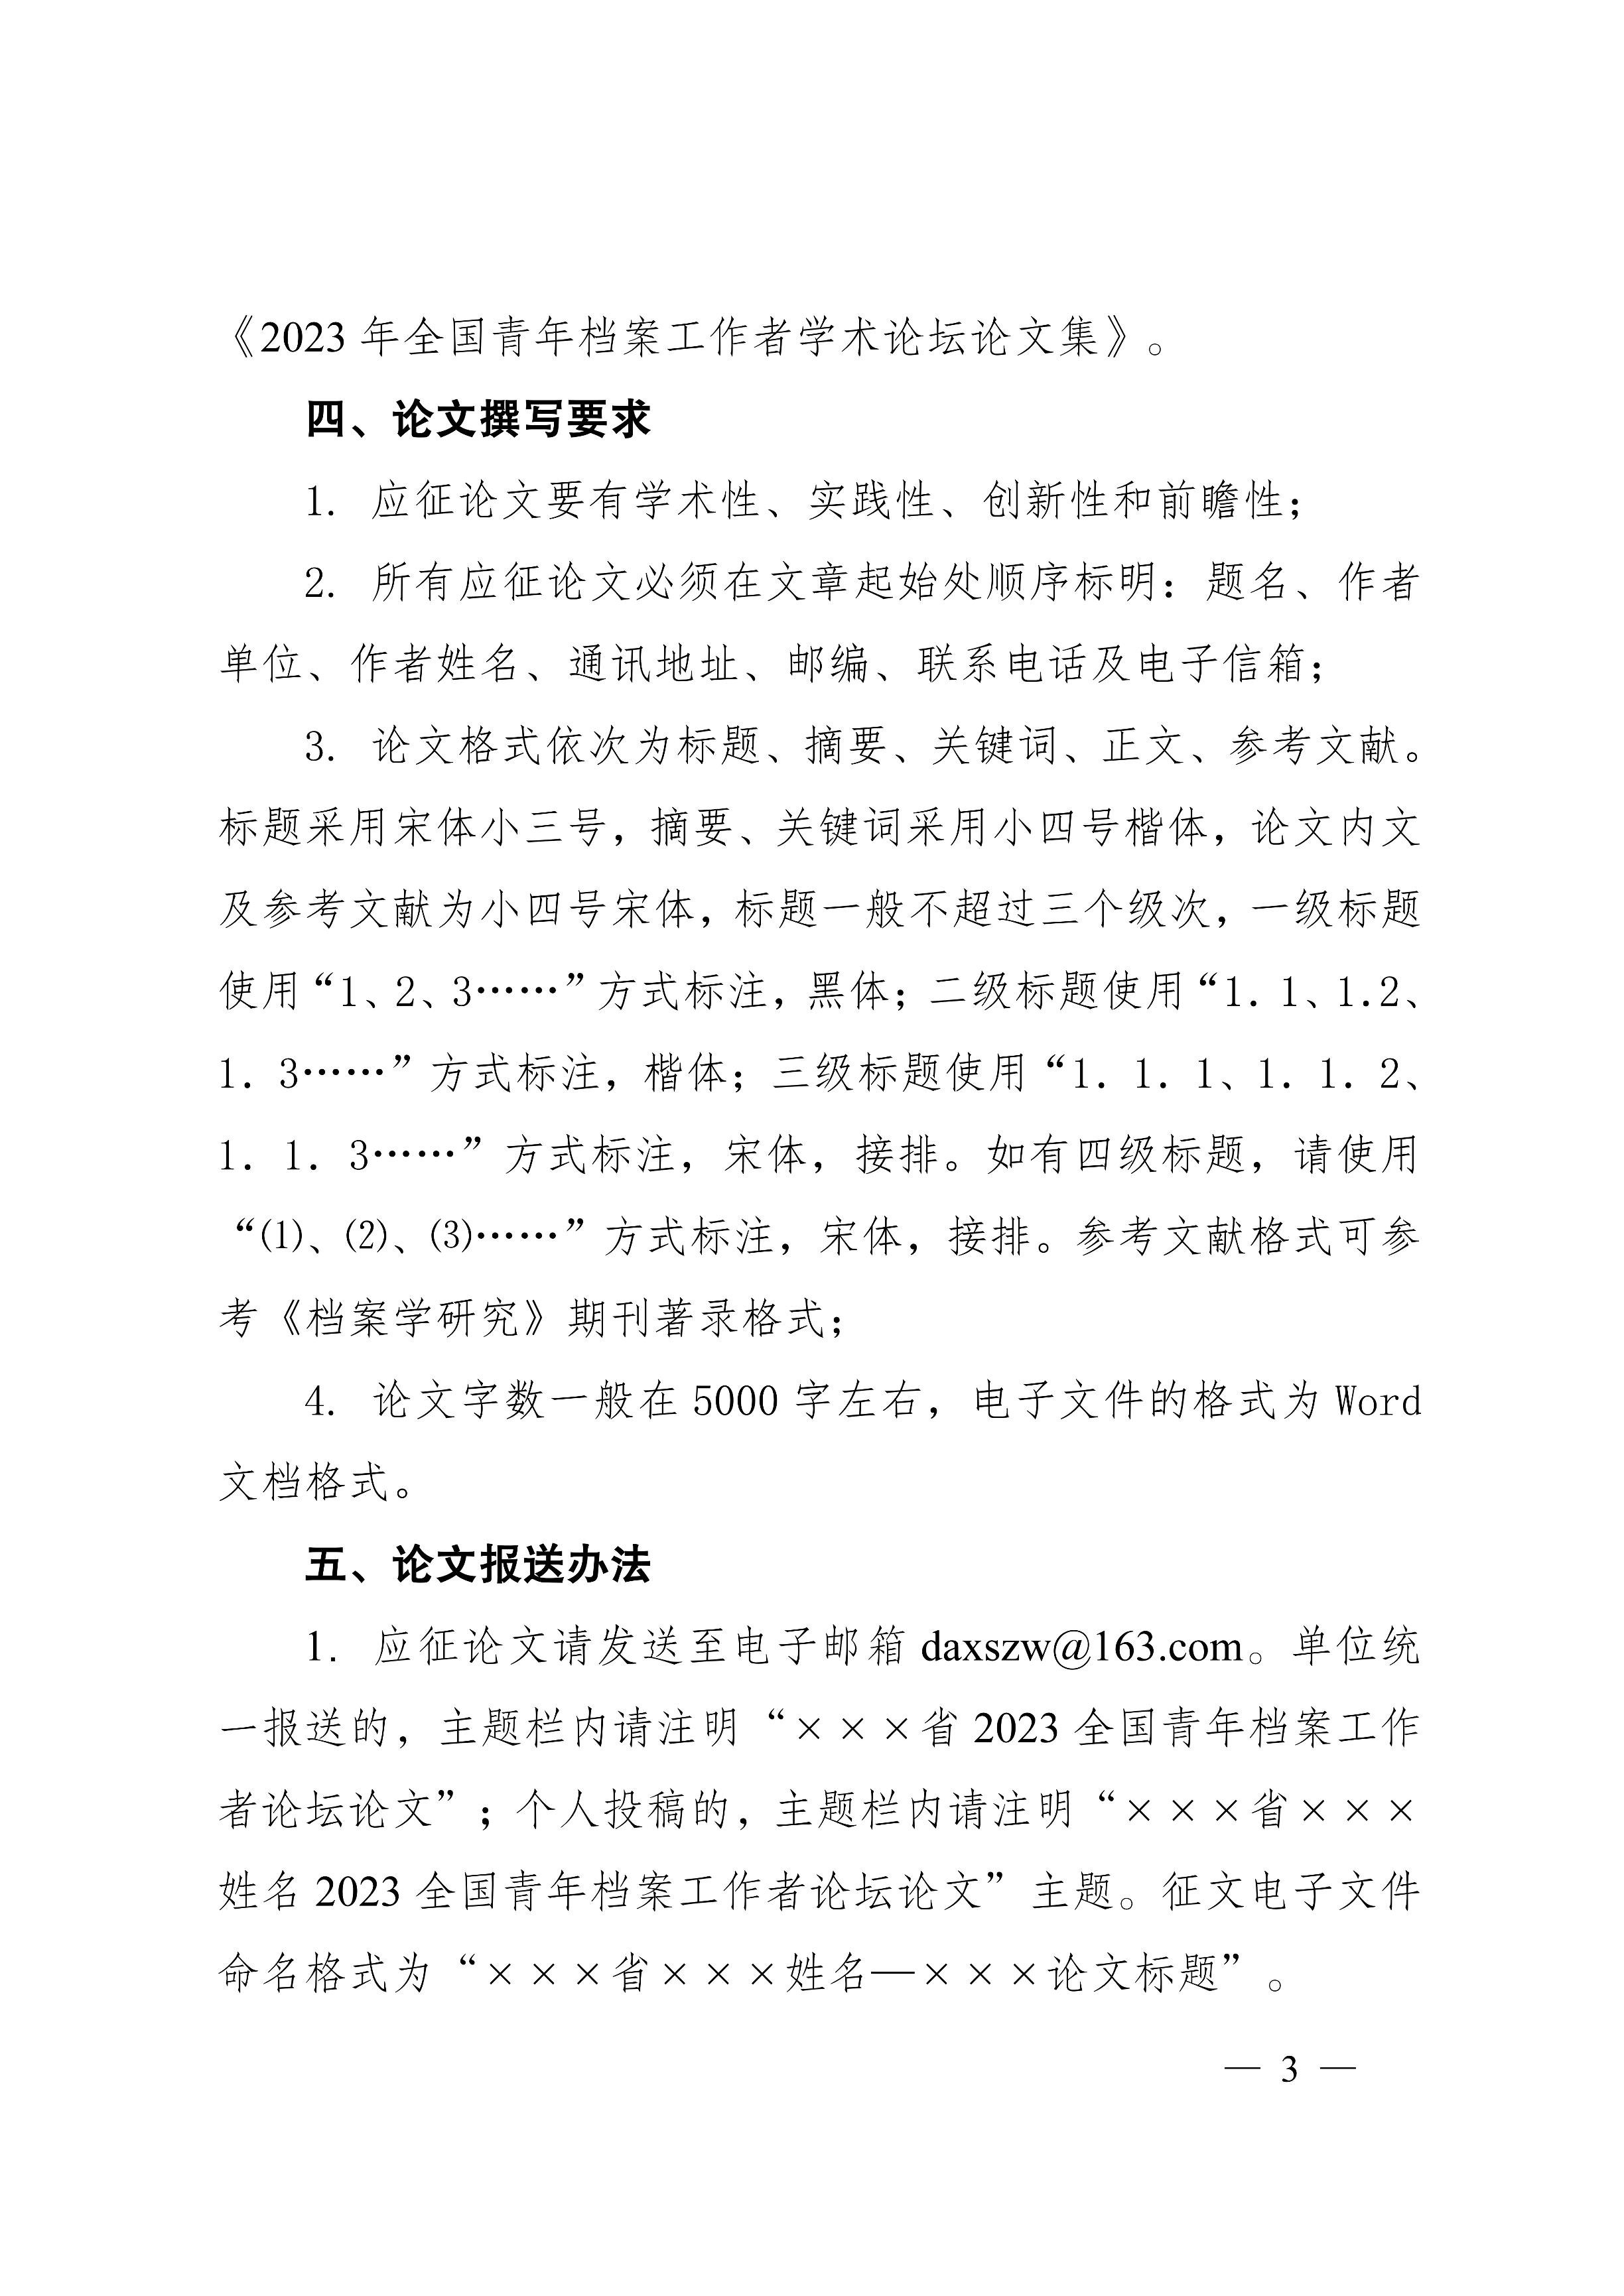 [2023]3号 中国档案学会关于征集2023年全国青年档案工作者学术论坛论文的通知-2